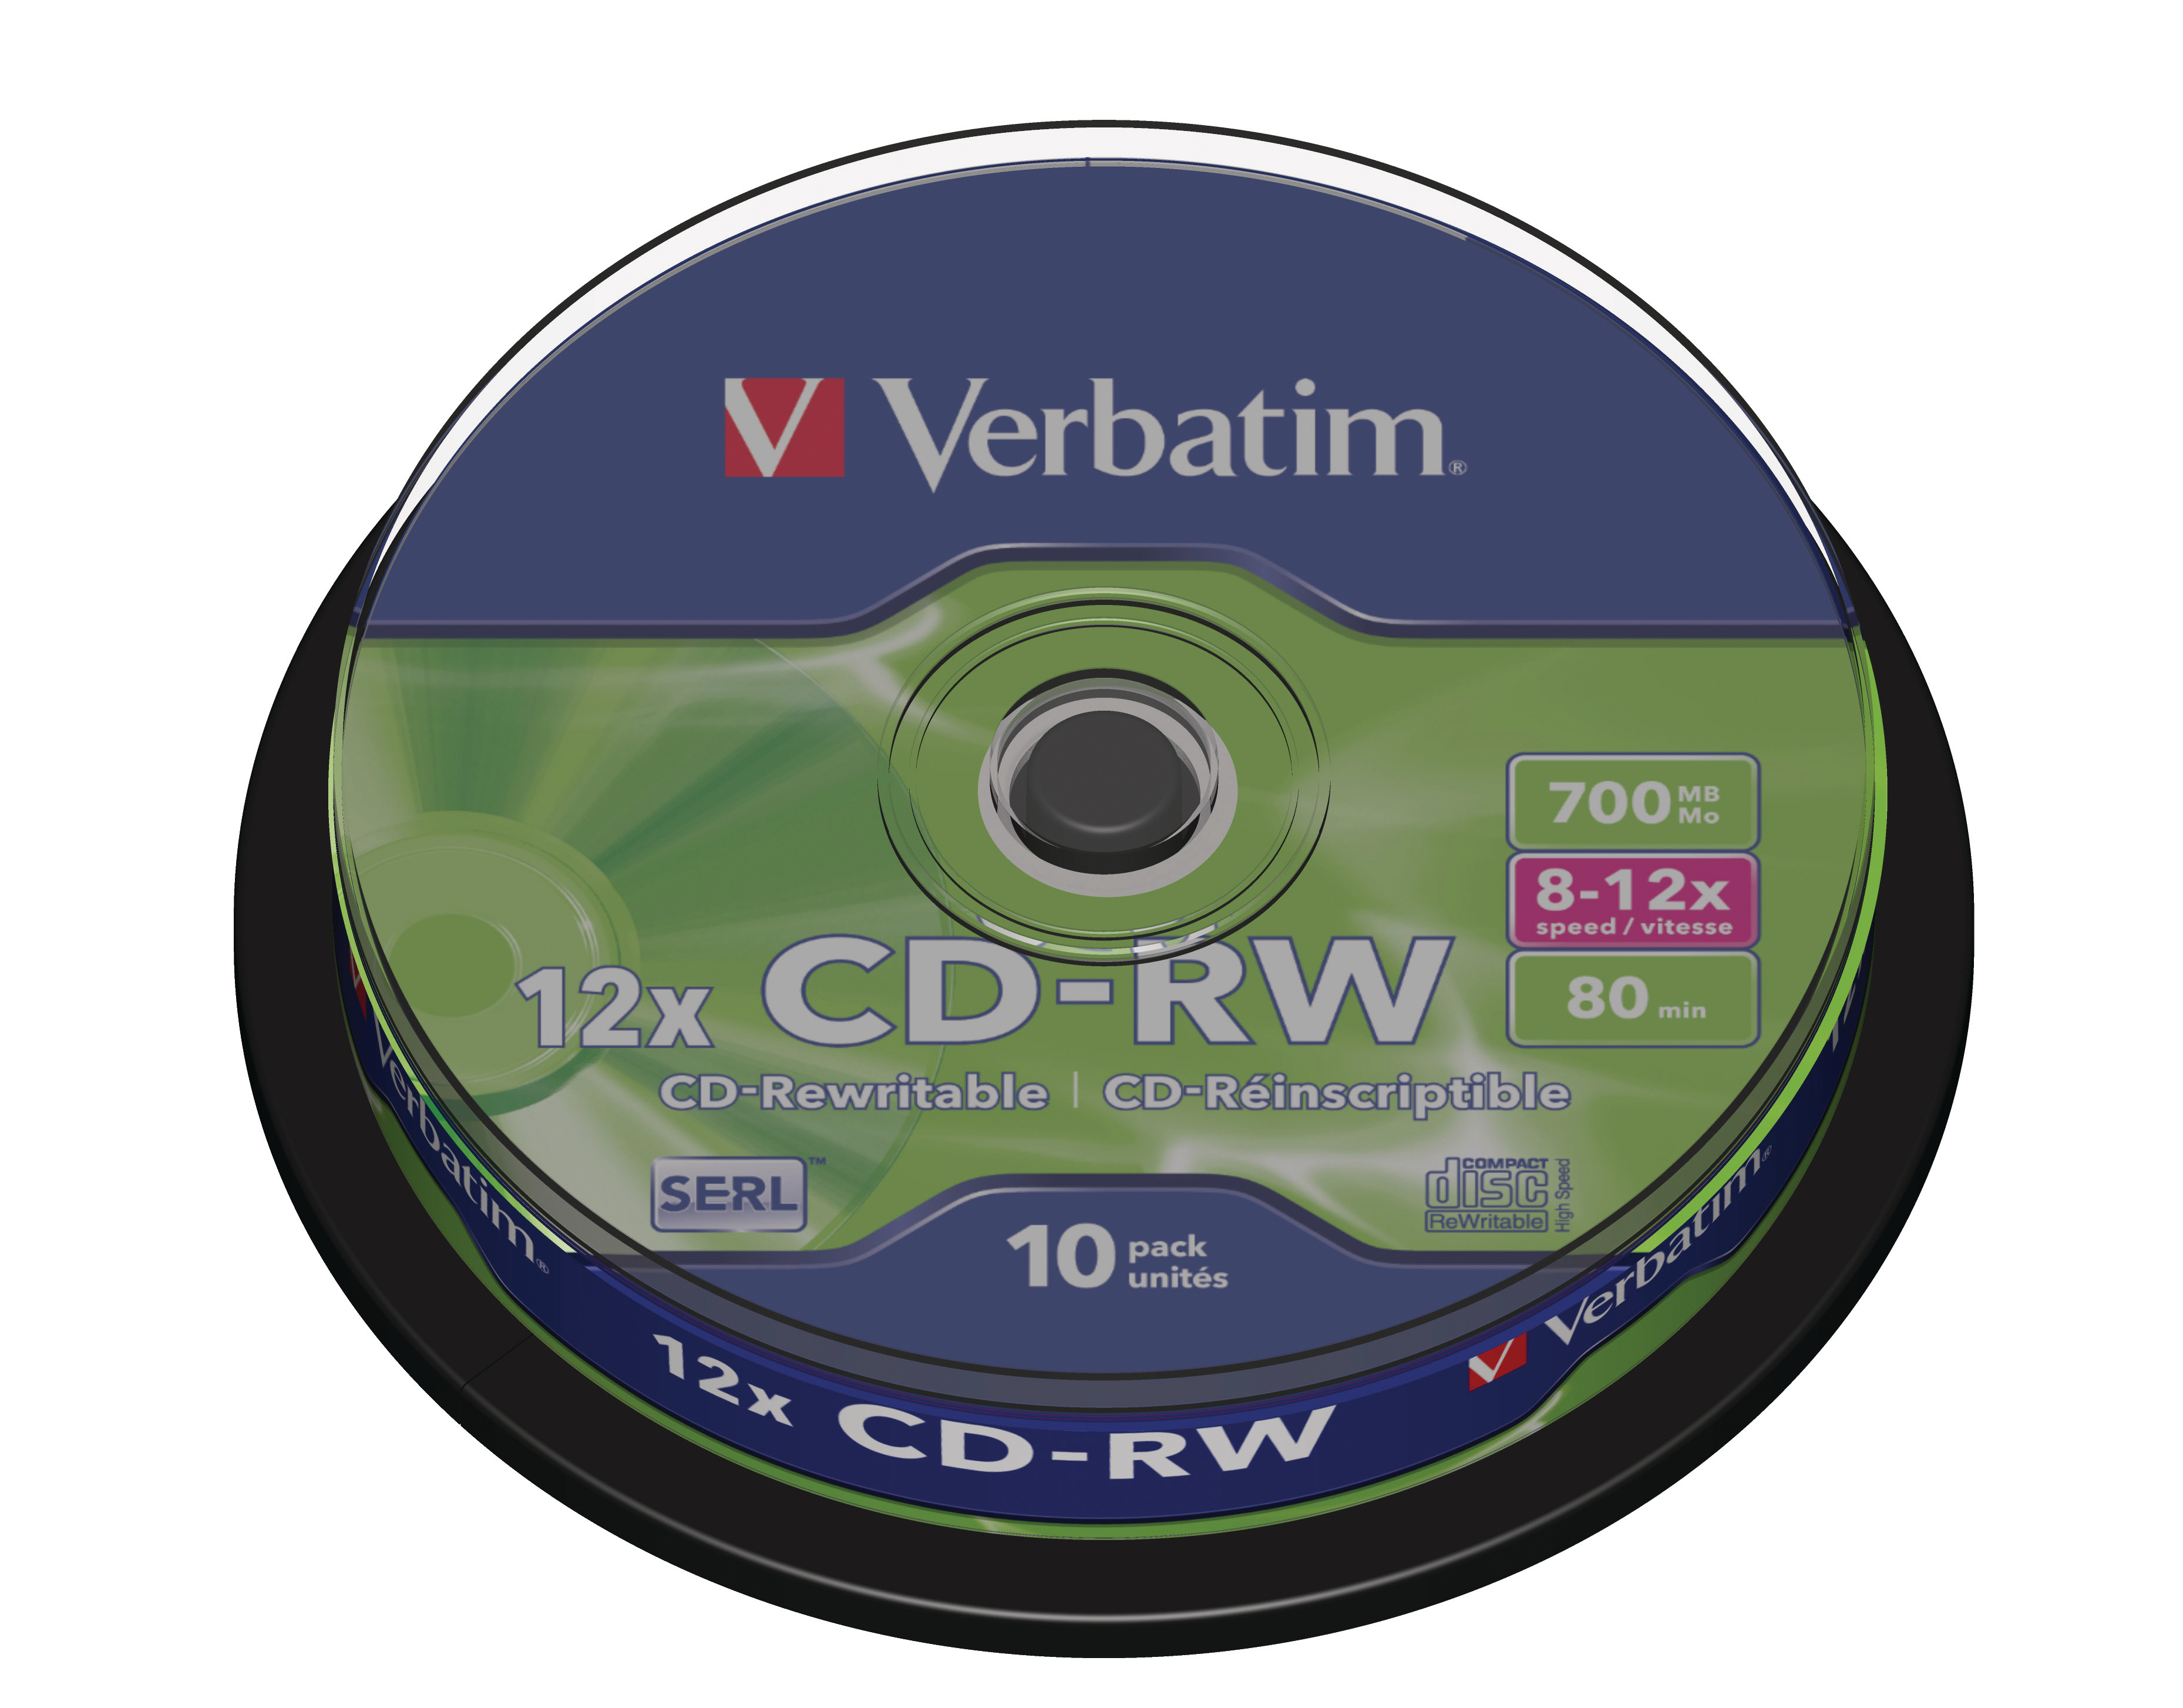 VERBATIM CD-RW Spindle 80MIN/700MB 43480 8-12x 10 Pcs